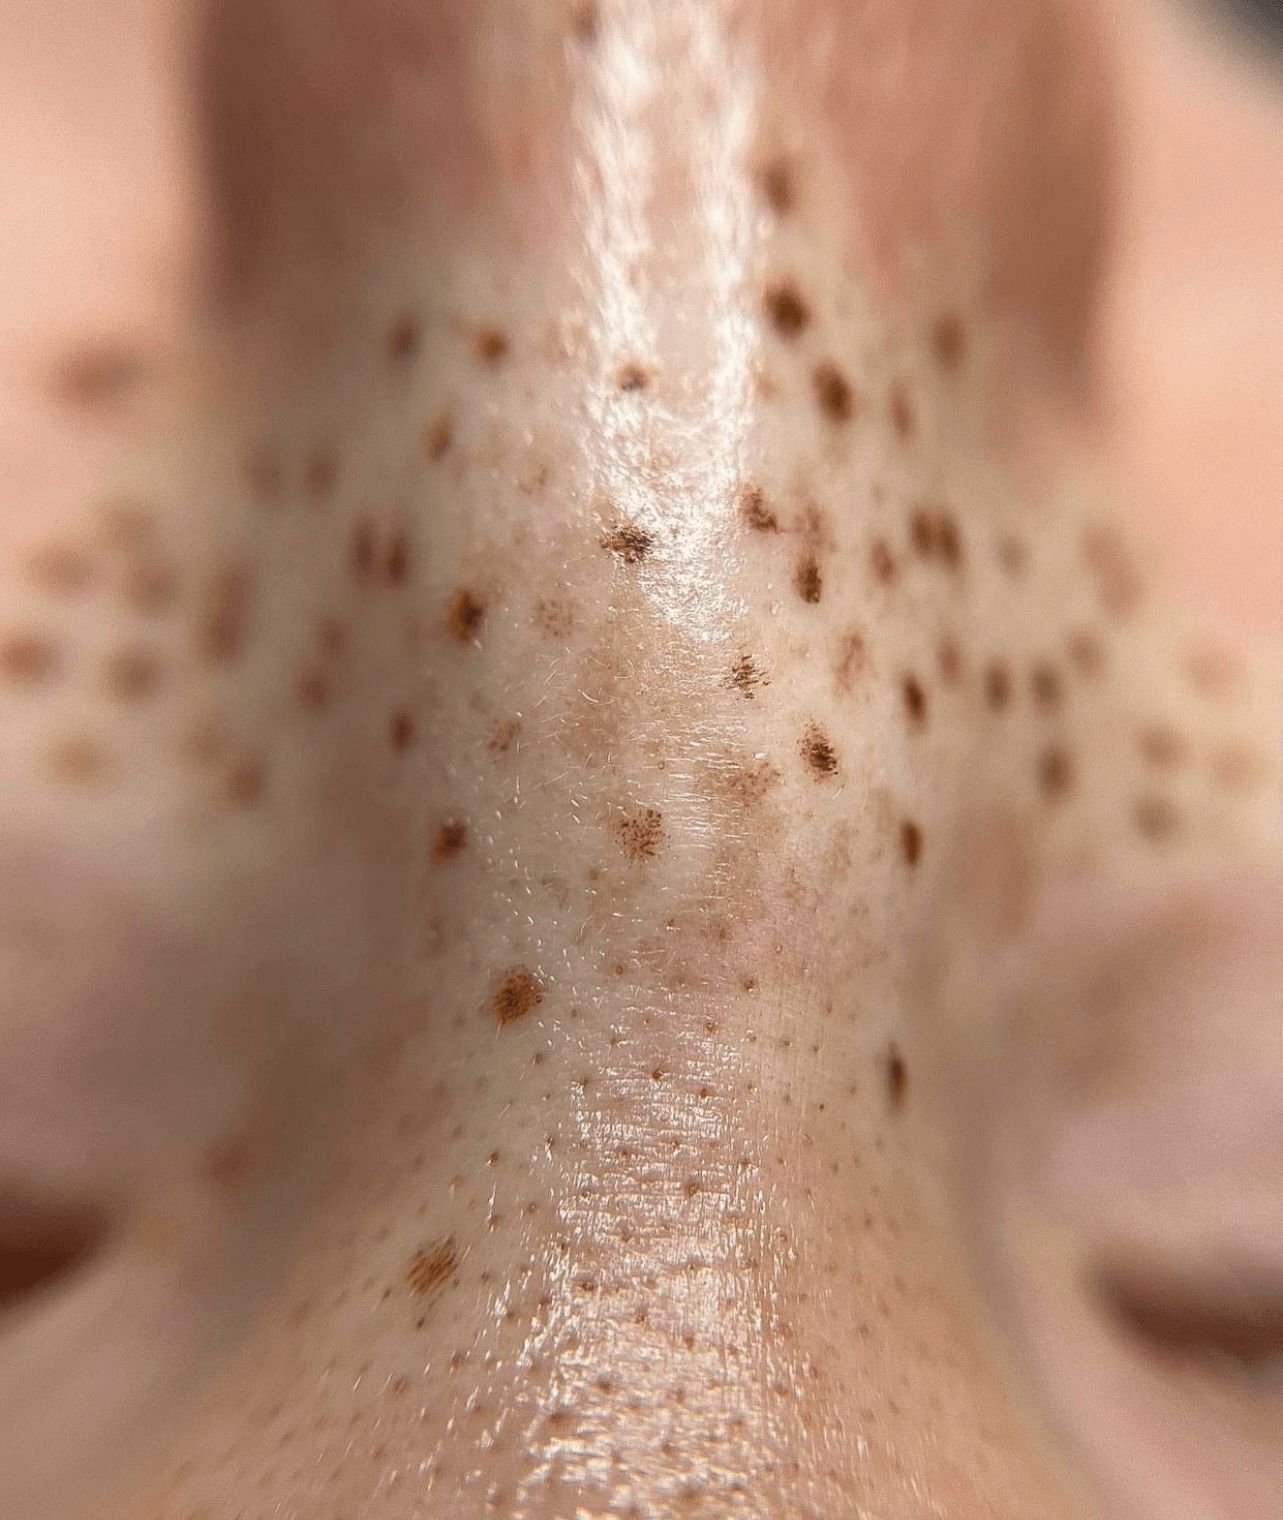 Faux Freckles treatment